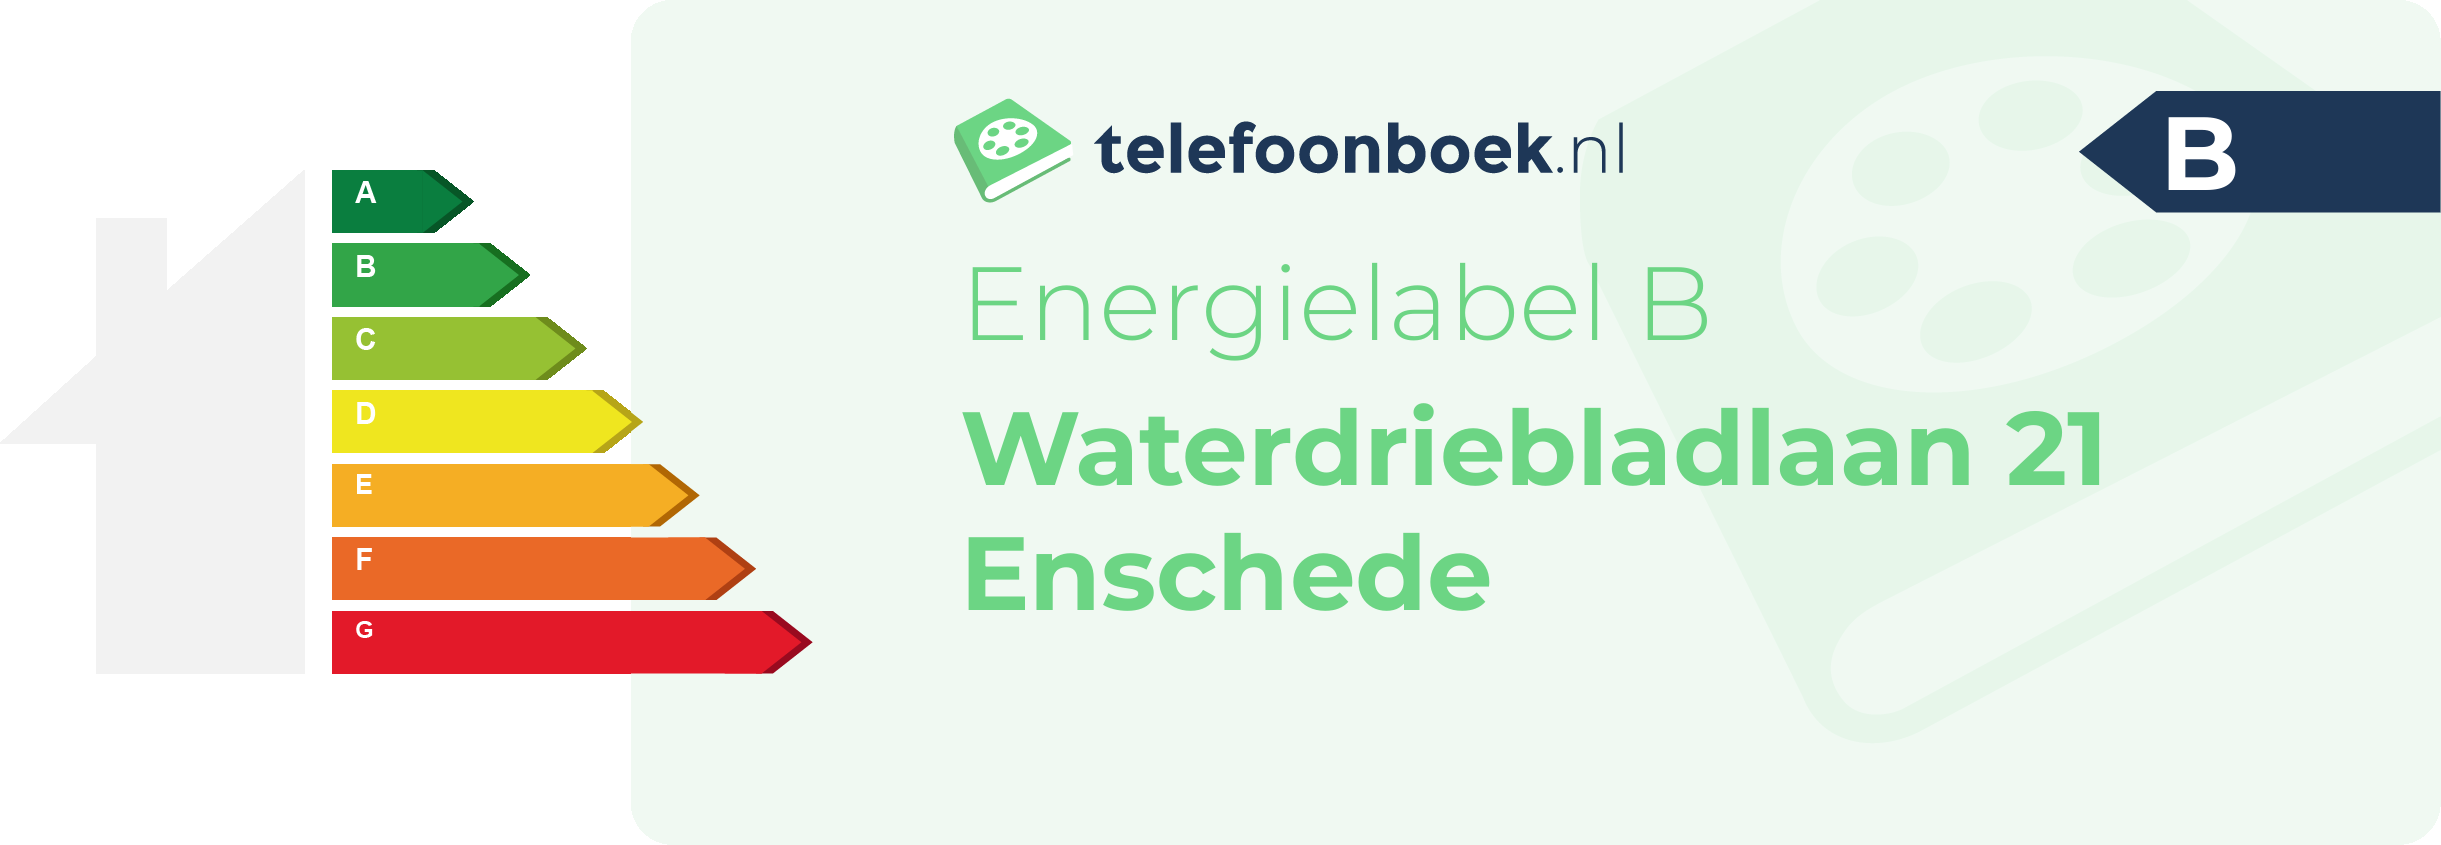 Energielabel Waterdriebladlaan 21 Enschede